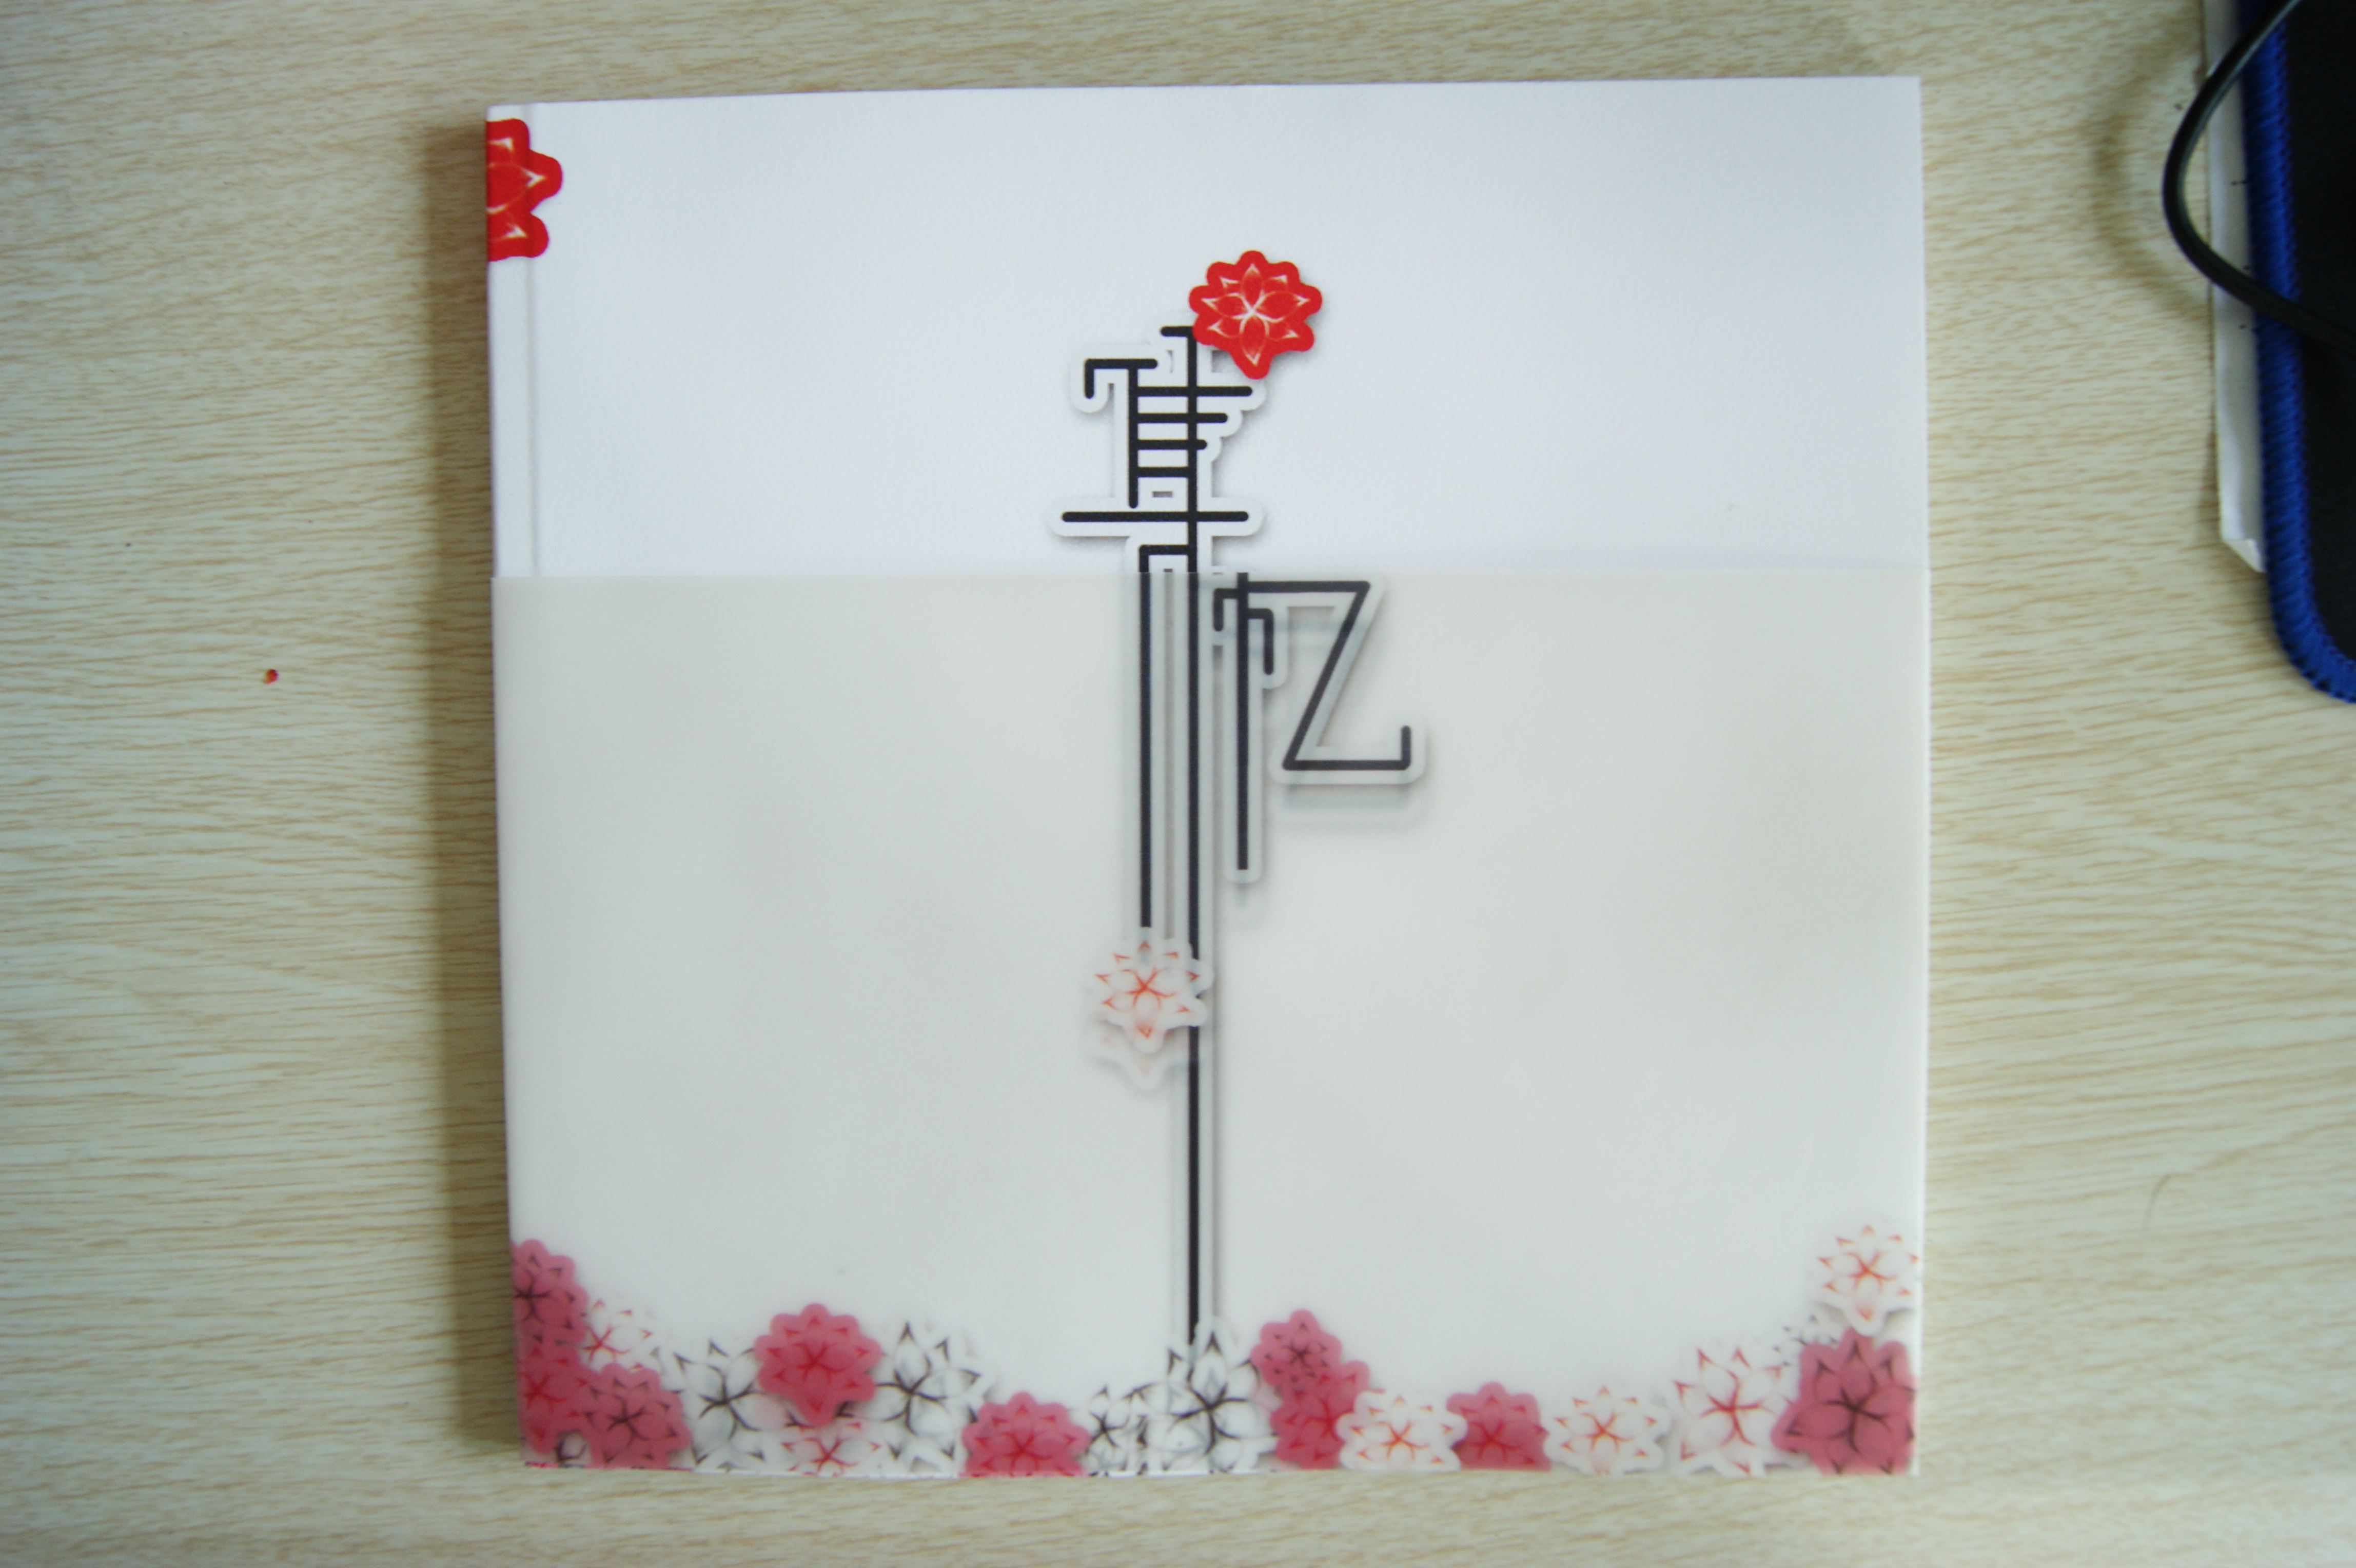 这款书封面的设计是采用花的元素花是用手绘板画的然后描边,红,白,黑